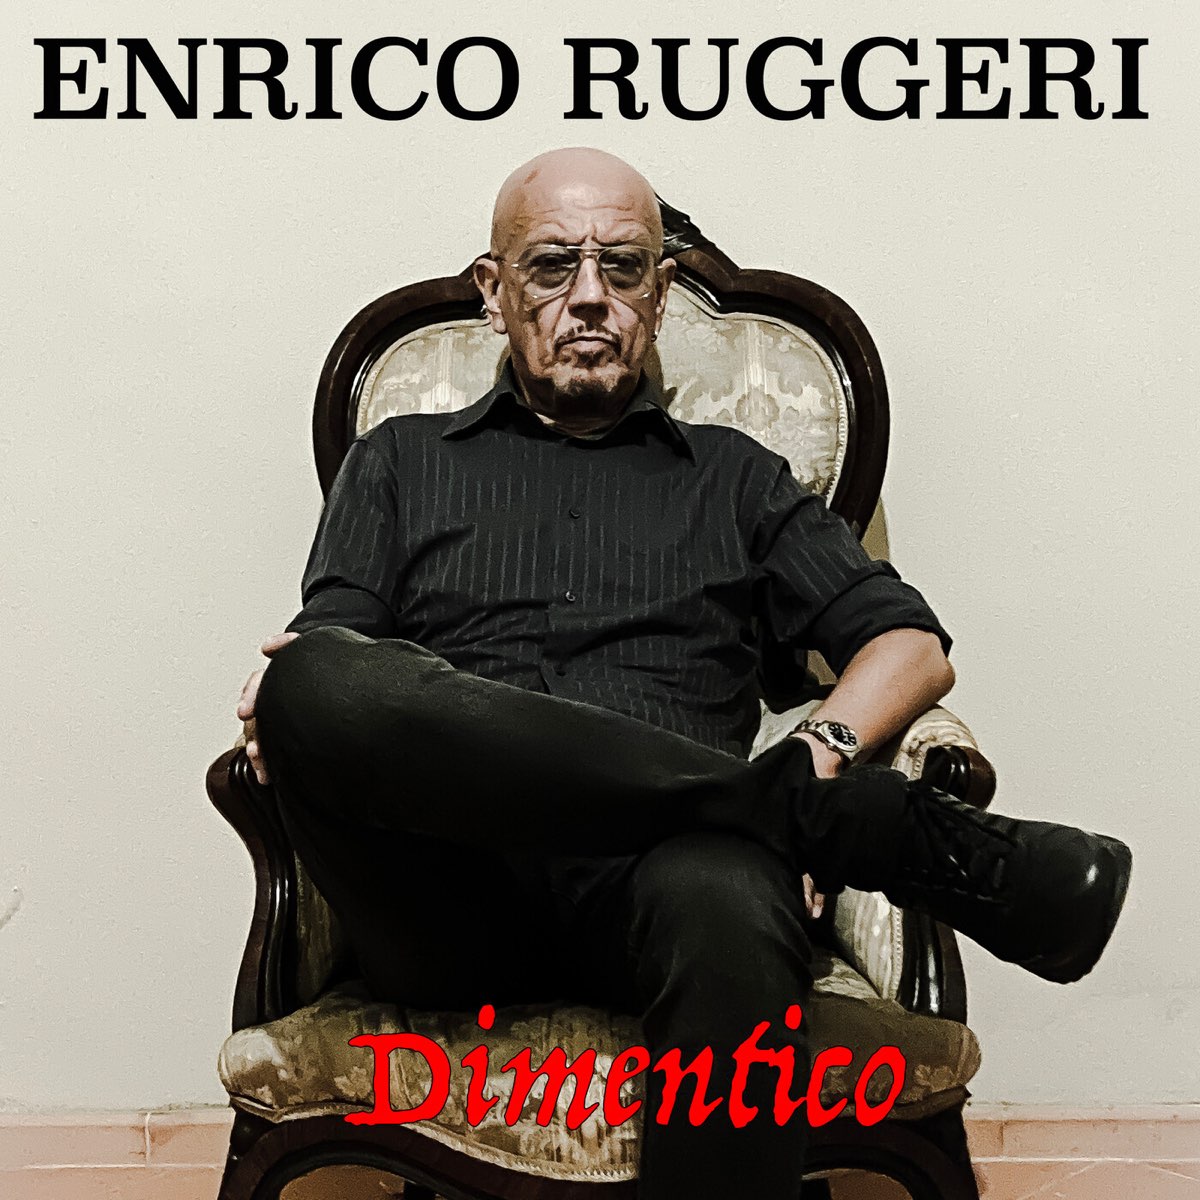 Enrico Ruggeri: “Dimentico”, una ballata struggente sull’Alzheimer